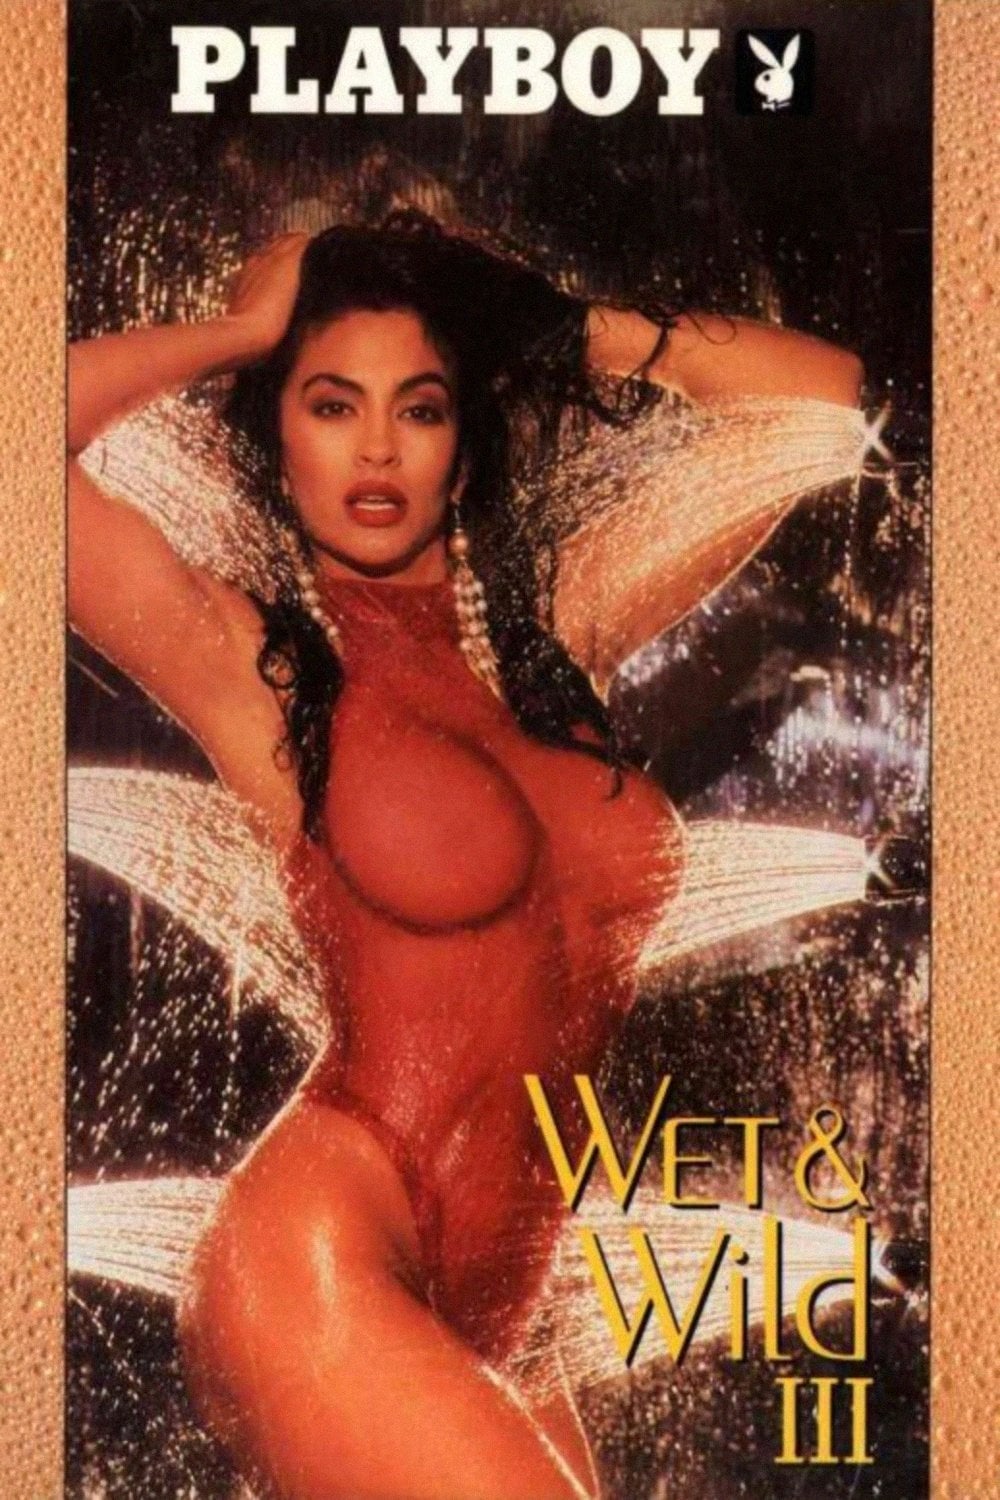 Playboy: Wet & Wild III